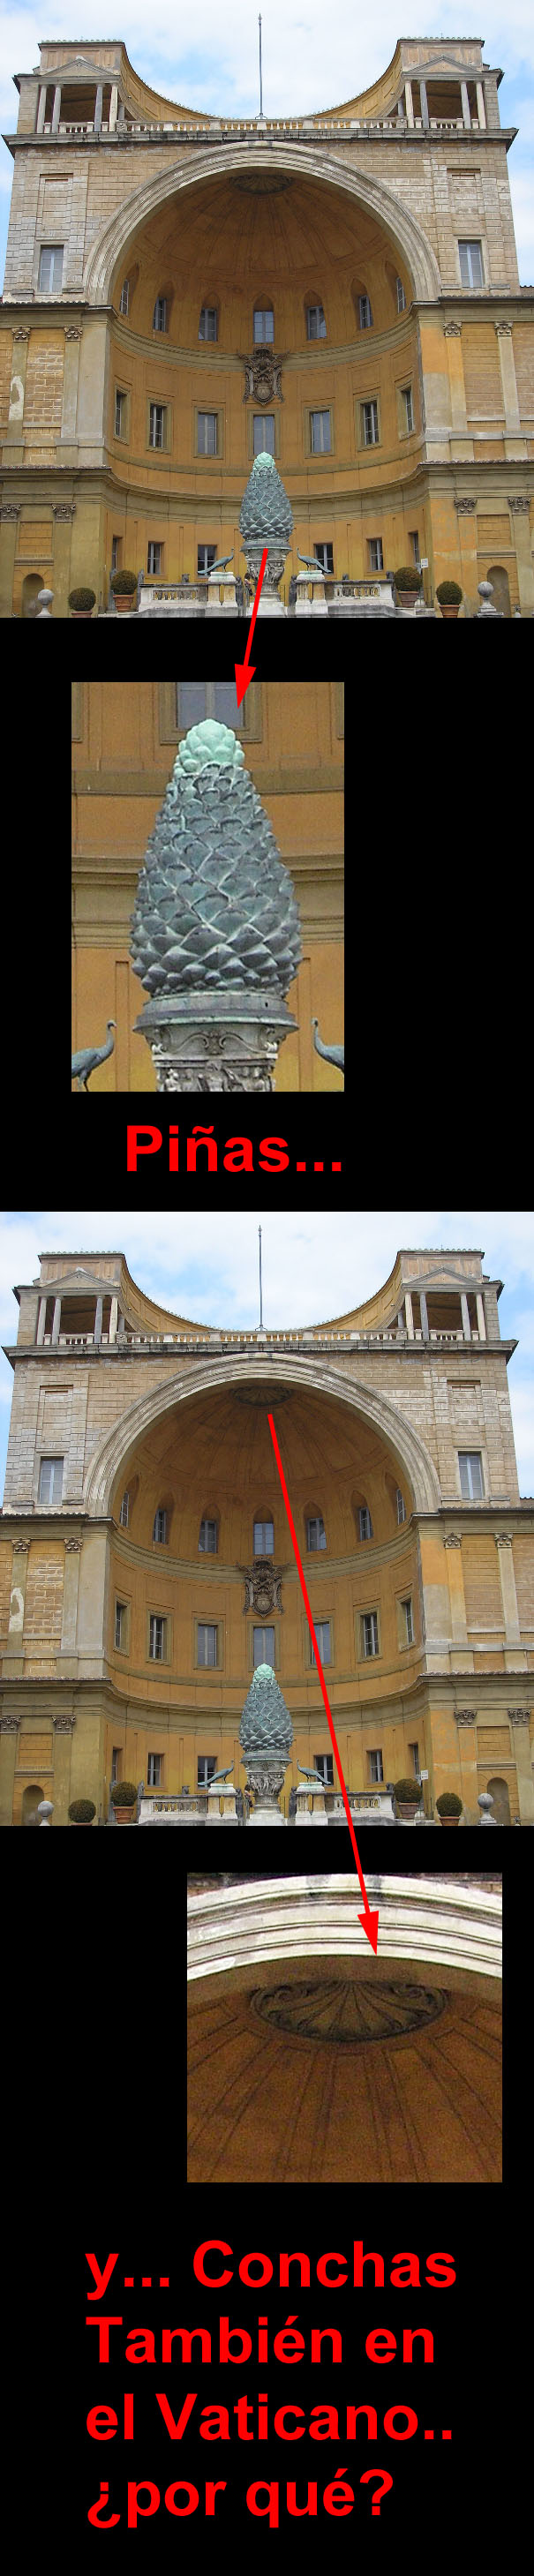 pinas_y_conchas_en_el_Vaticano